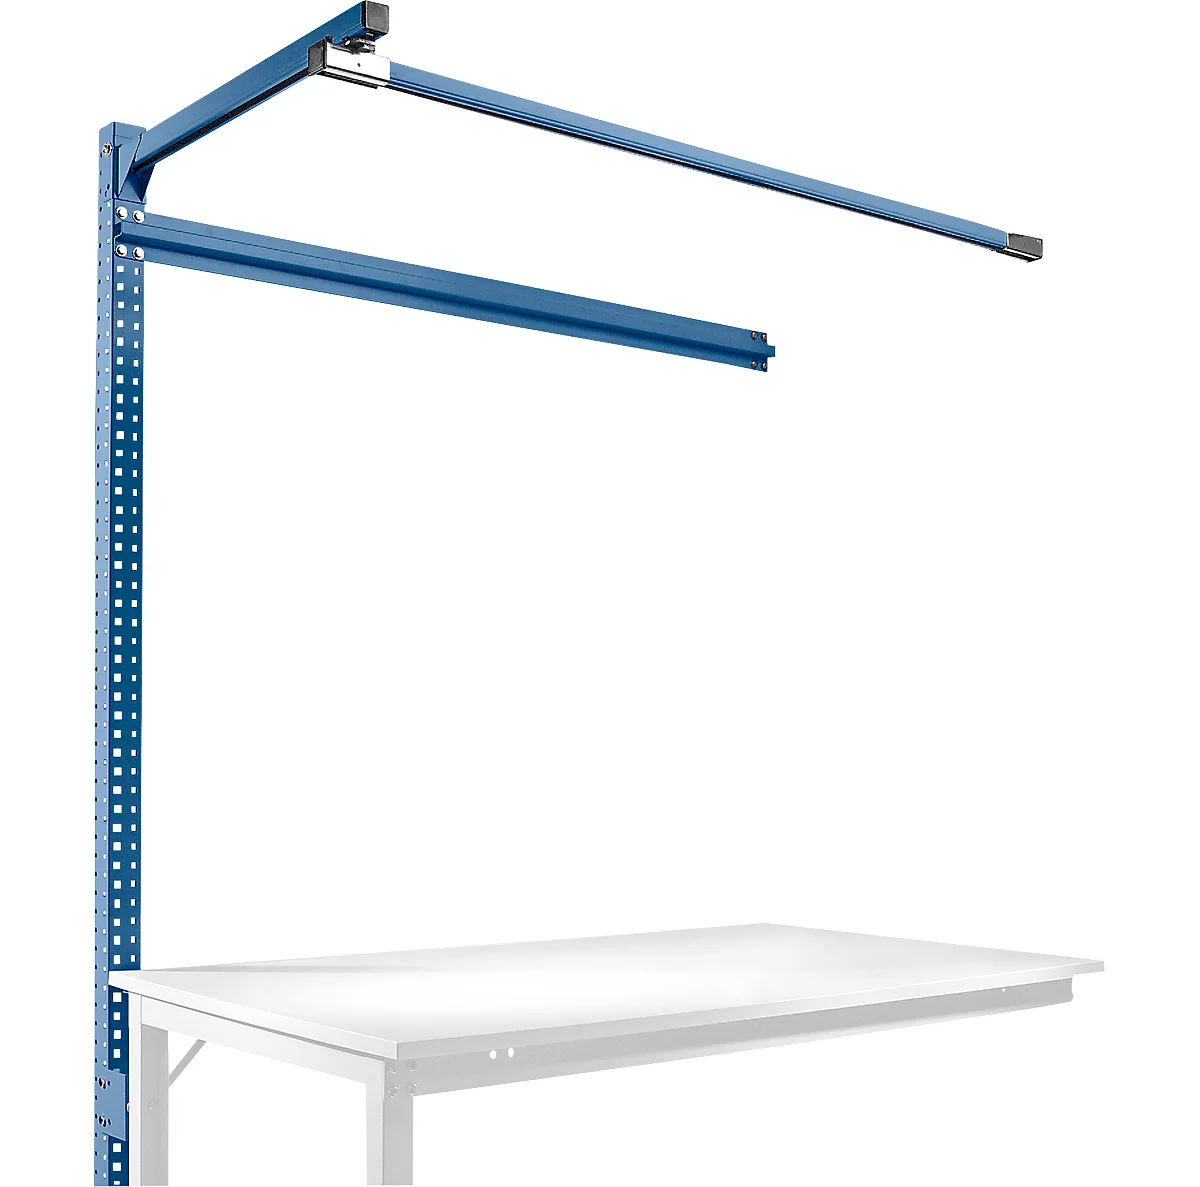 Estructura pórtica adicional con brazo saliente, Mesa de extensión STANDARD mesa de trabajo/banco de trabajo UNIVERSAL/PROFI, 1500 mm, azul brillante